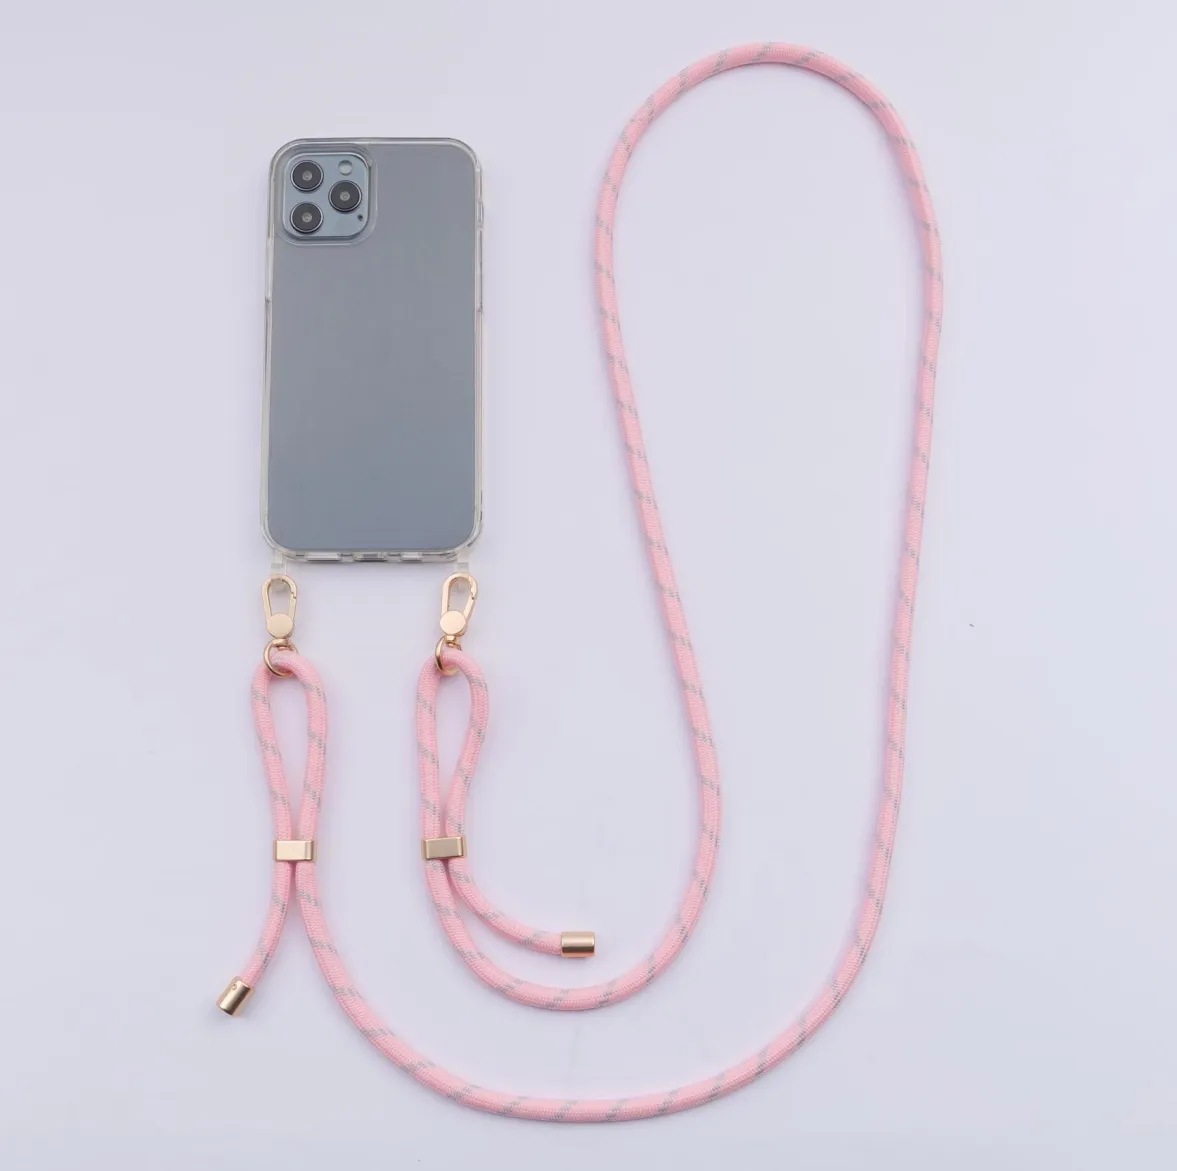 Correa de cordón ajustable para teléfono, cuerda colgante móvil, accesorios para teléfono móvil